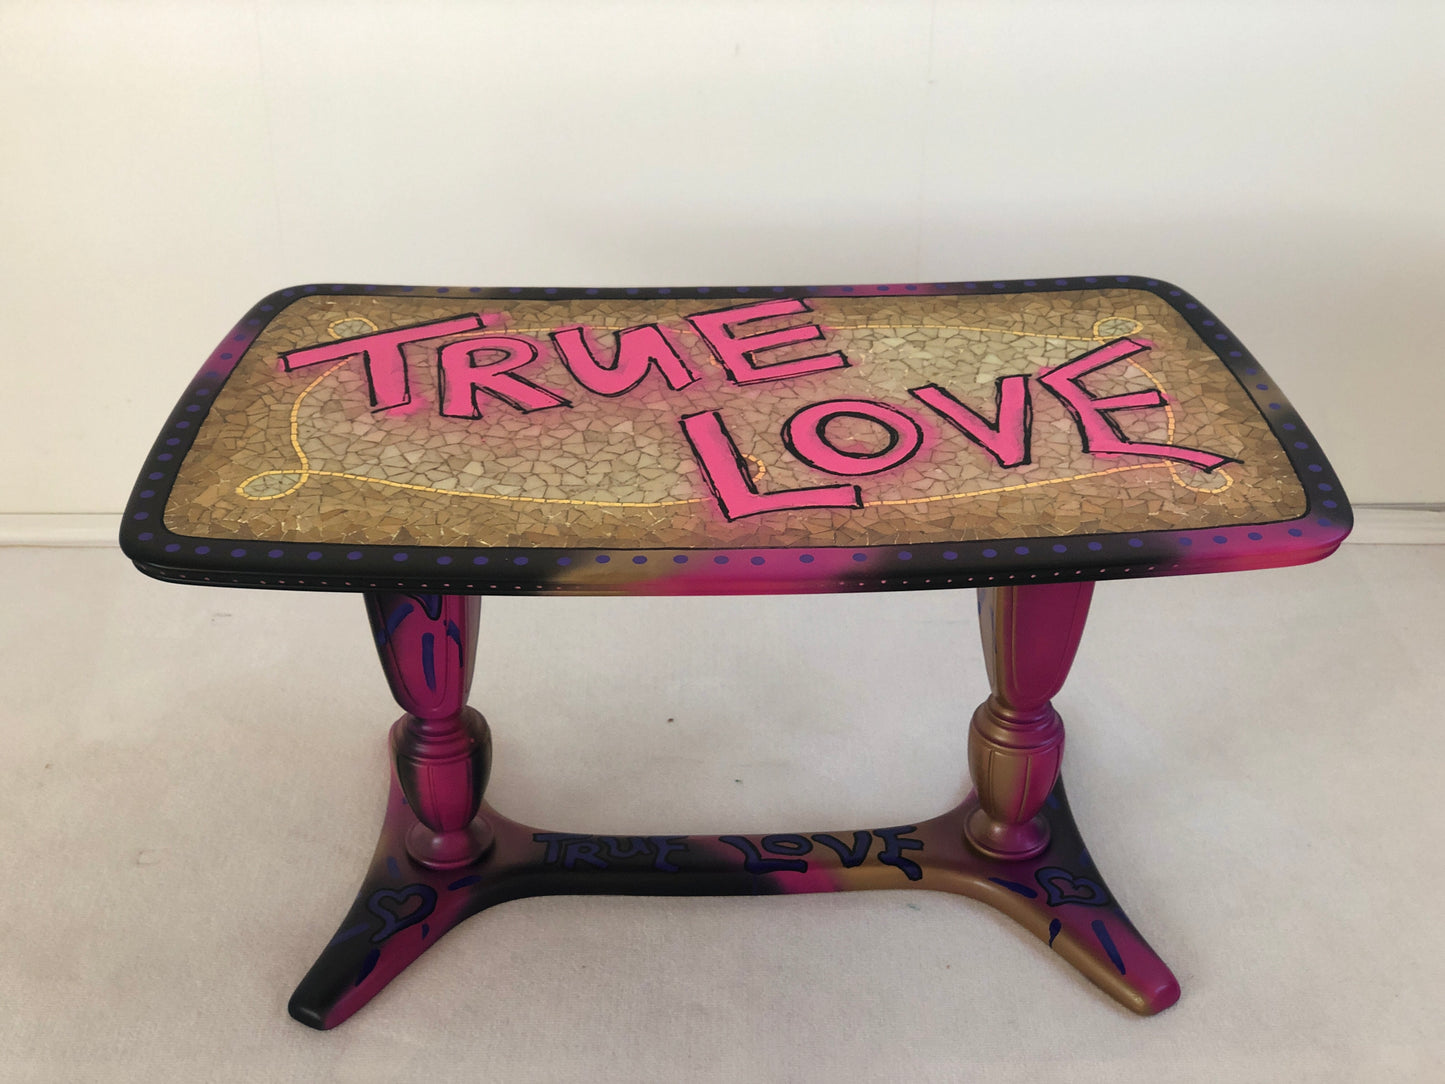 True Love Vintage Mosaic Tisch Art Loft